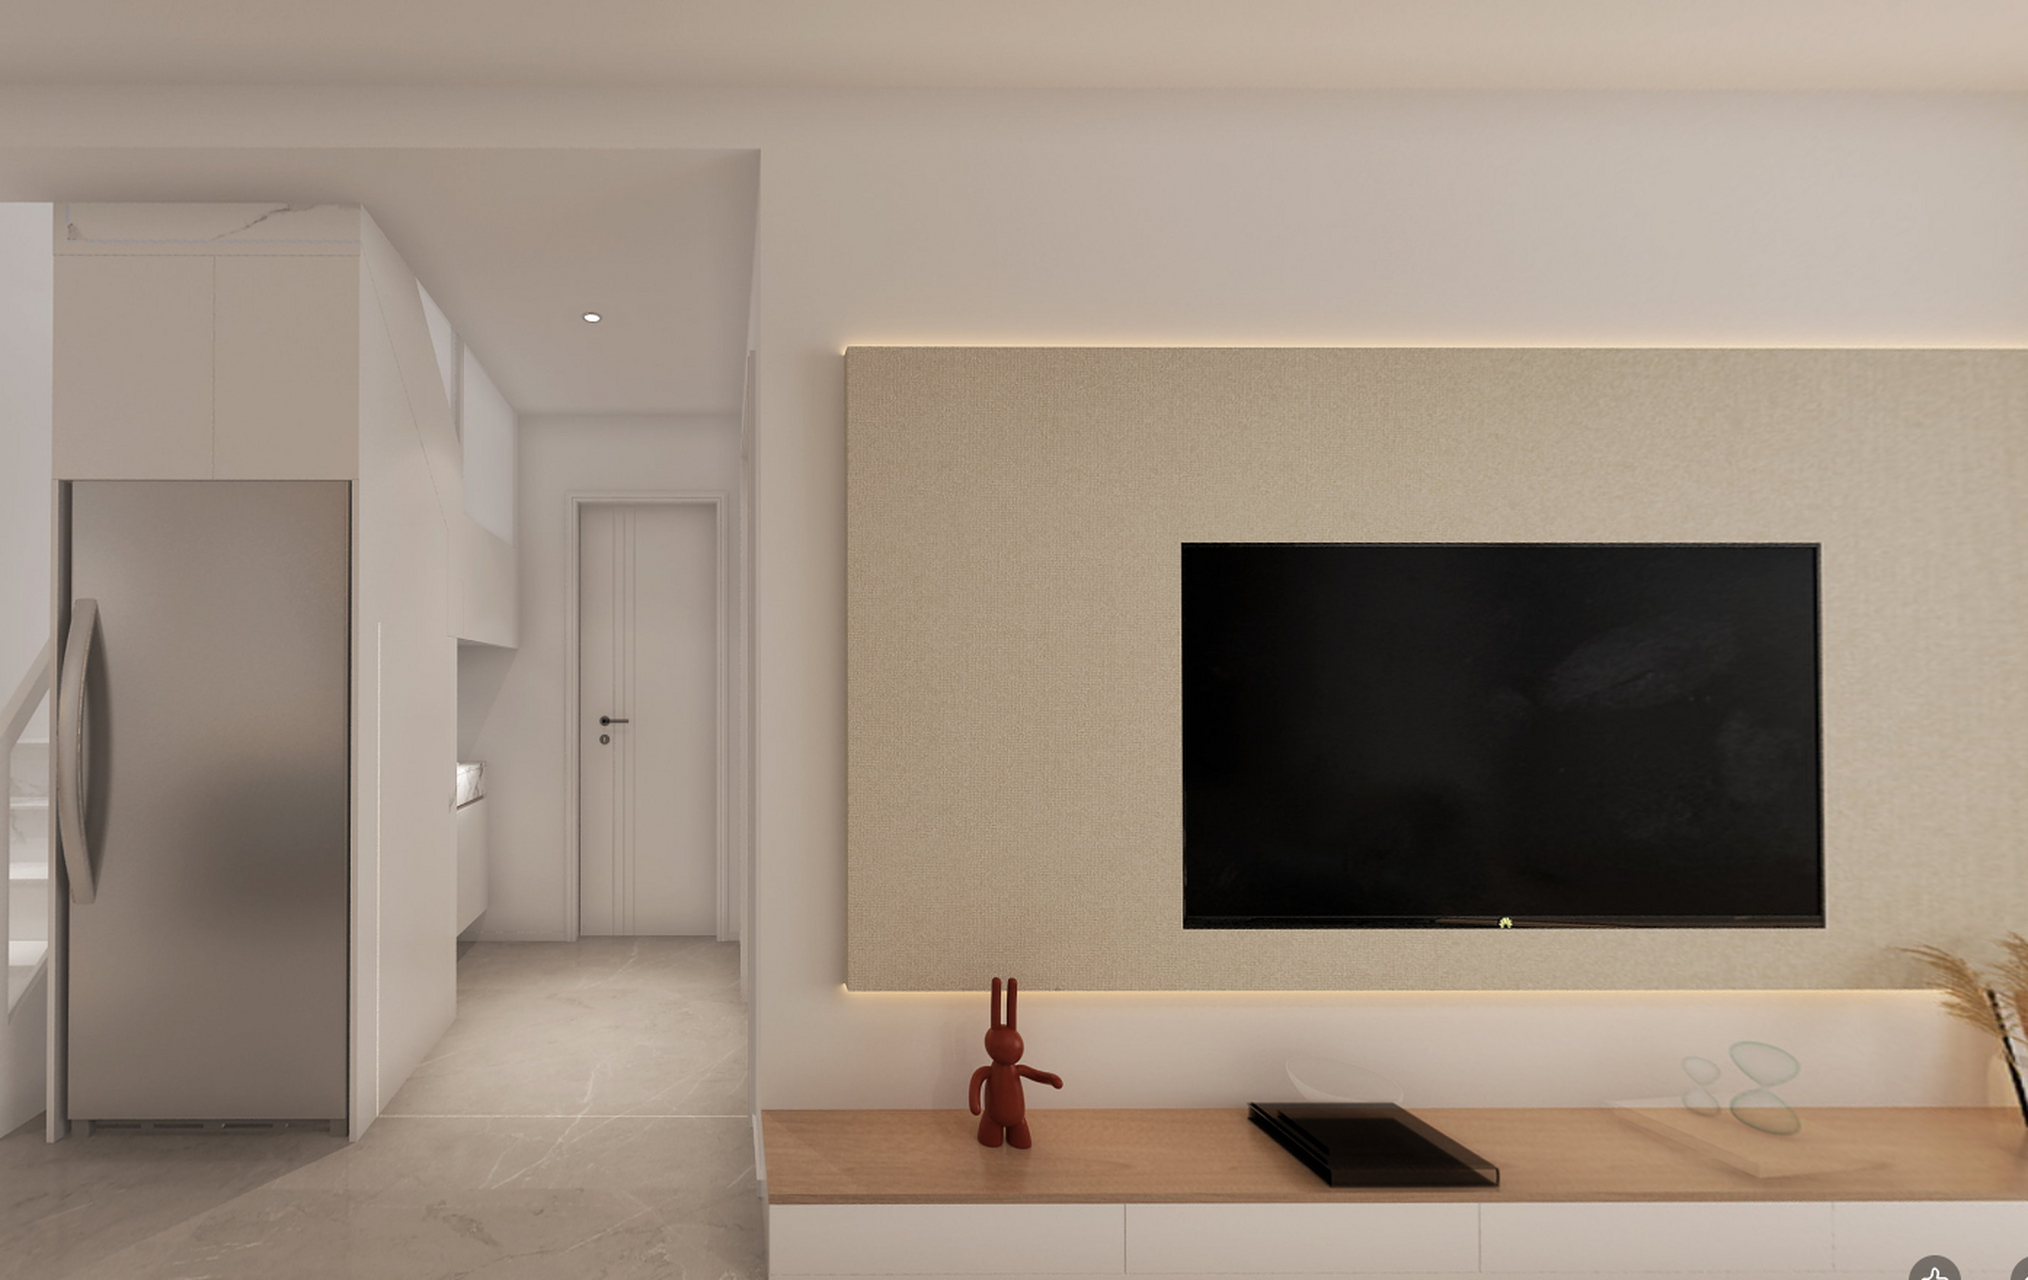 180㎡ 现代简约 客厅电视背景墙:乳胶漆采用的是暖色调